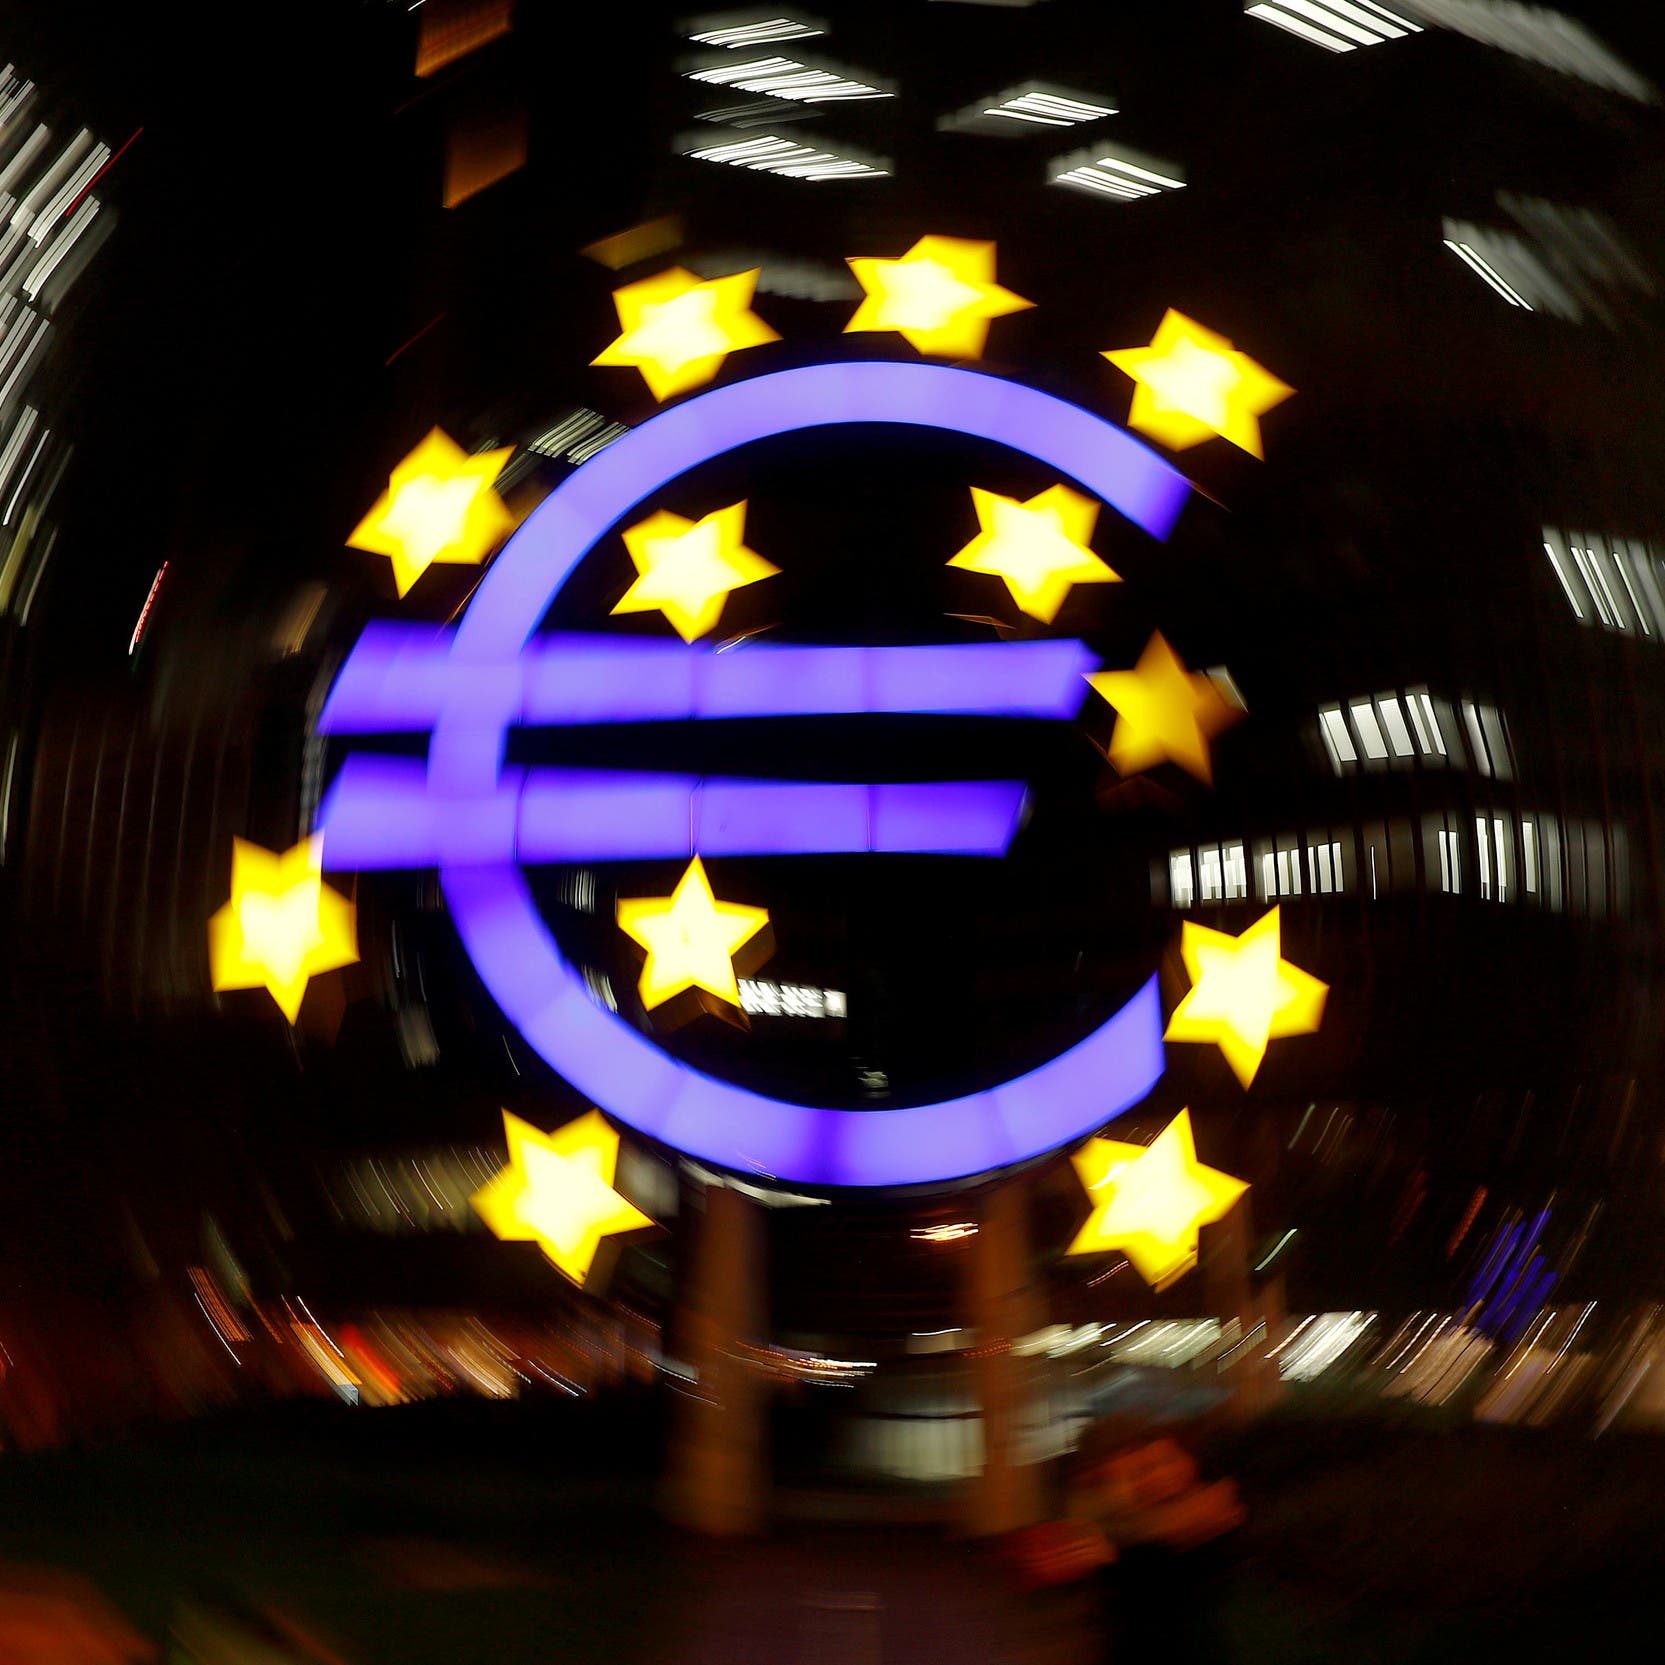 الثقة في اقتصاد "اليورو" تتدهور وسط تساؤلات حول آفاق النمو